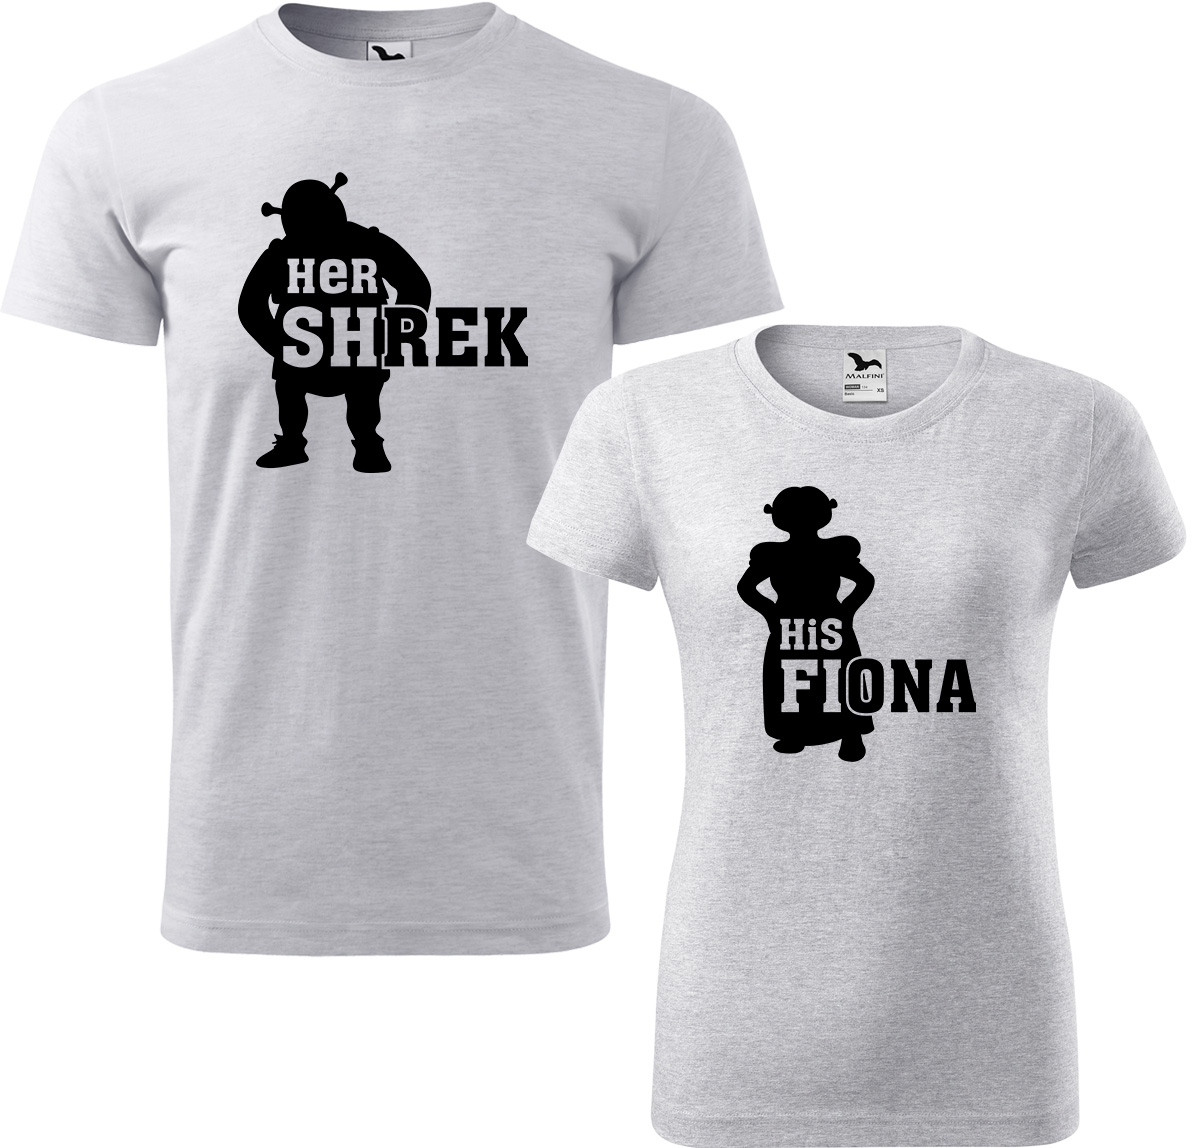 Trička pro páry - Shrek a Fiona Barva: Světle šedý melír (03), Velikost dámské tričko: S, Velikost pánské tričko: XL